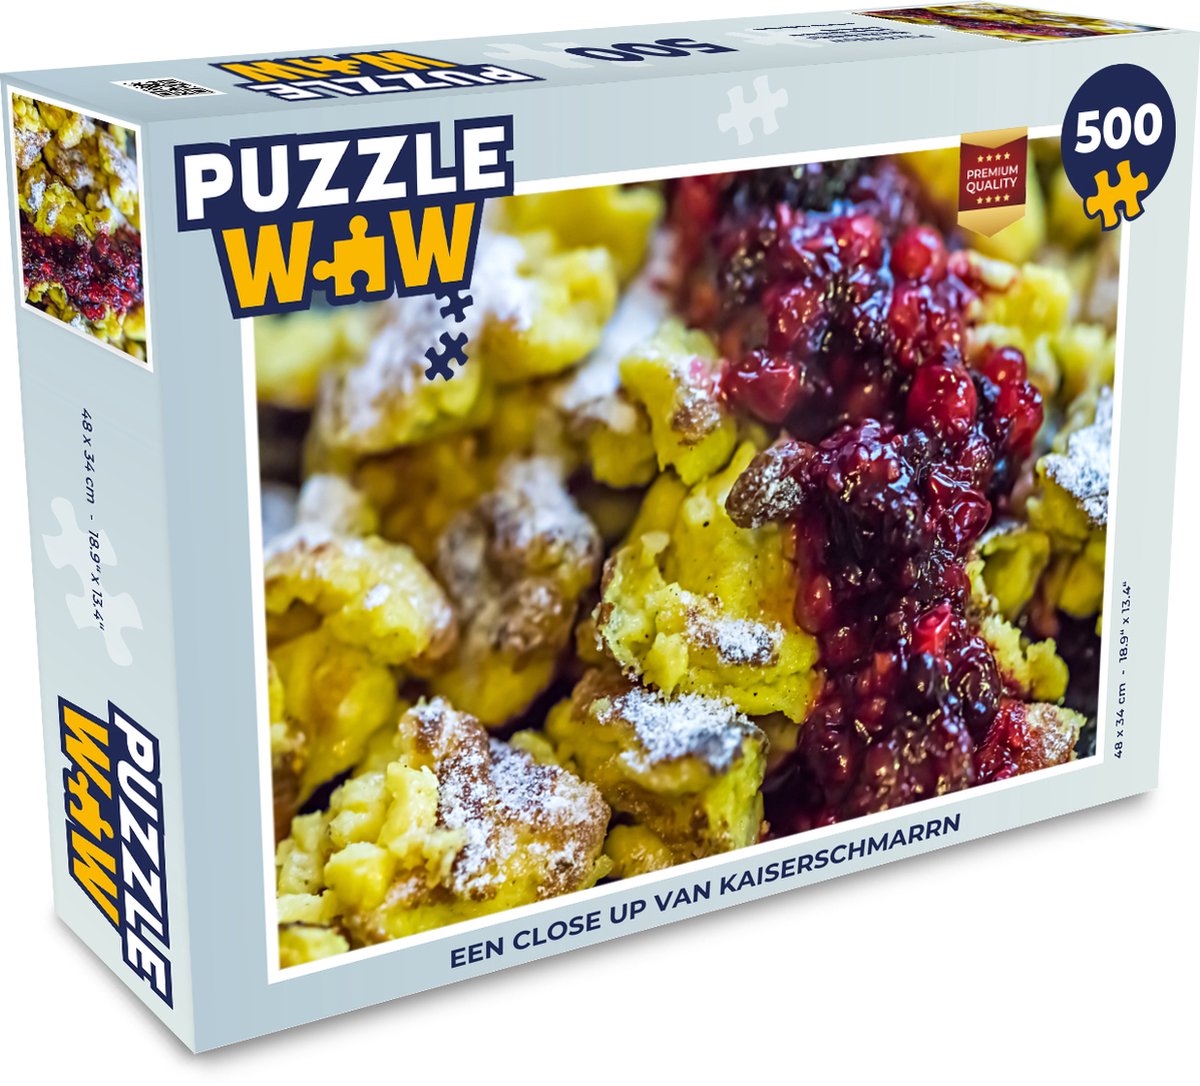 Afbeelding van product Puzzel 500 stukjes Kaiserschmarrn - Een close up van kaiserschmarrn - PuzzleWow heeft +100000 puzzels